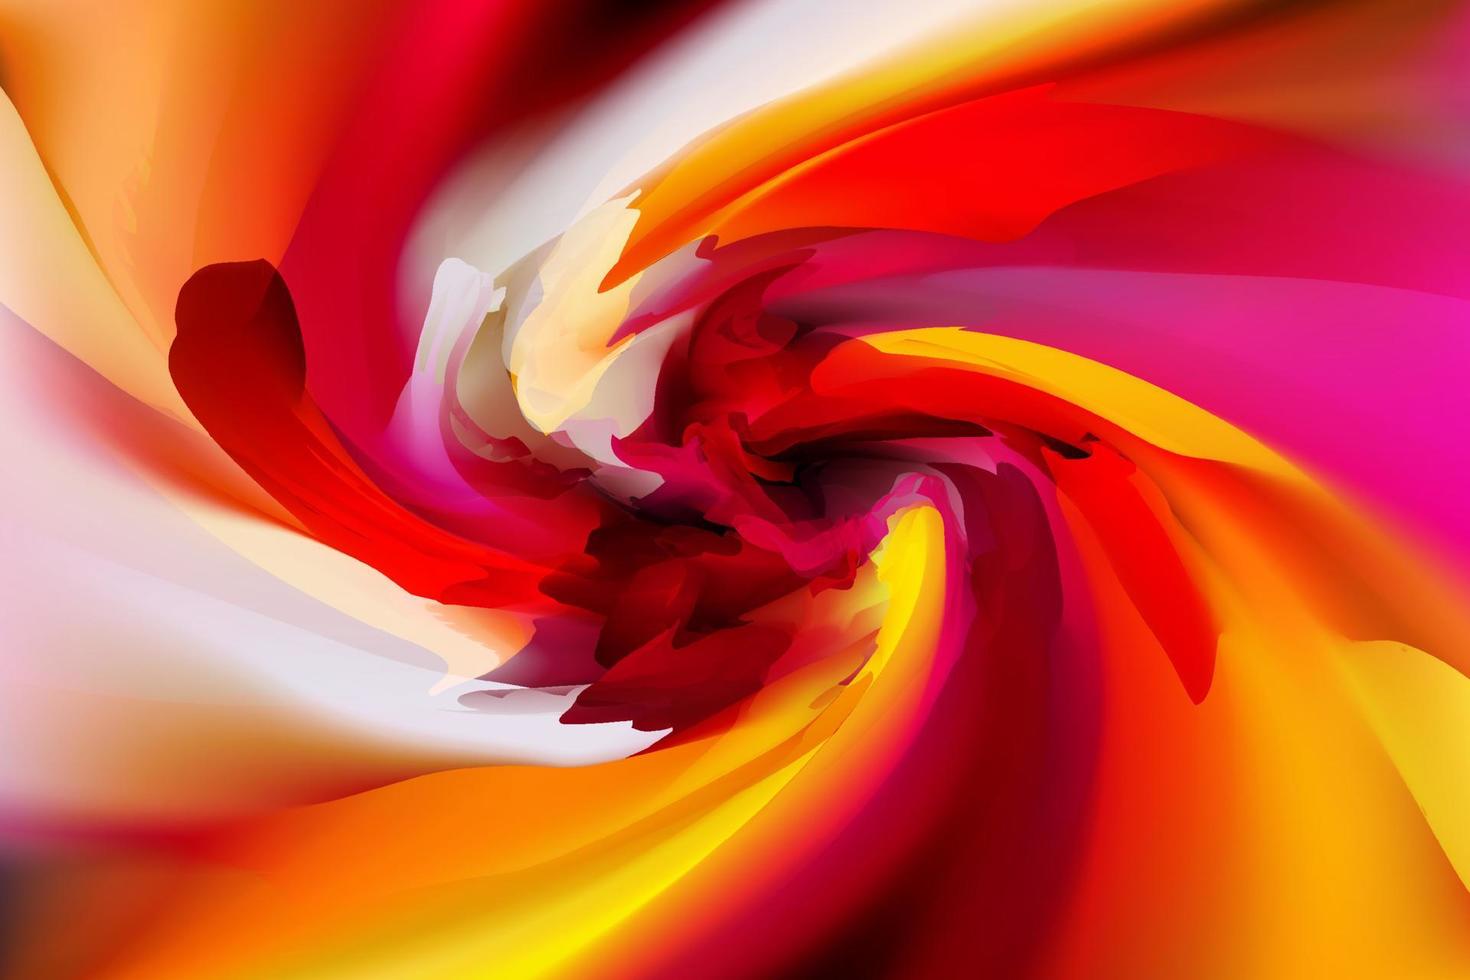 abstract achtergrond sjabloon kleur gradatie maas vector eps